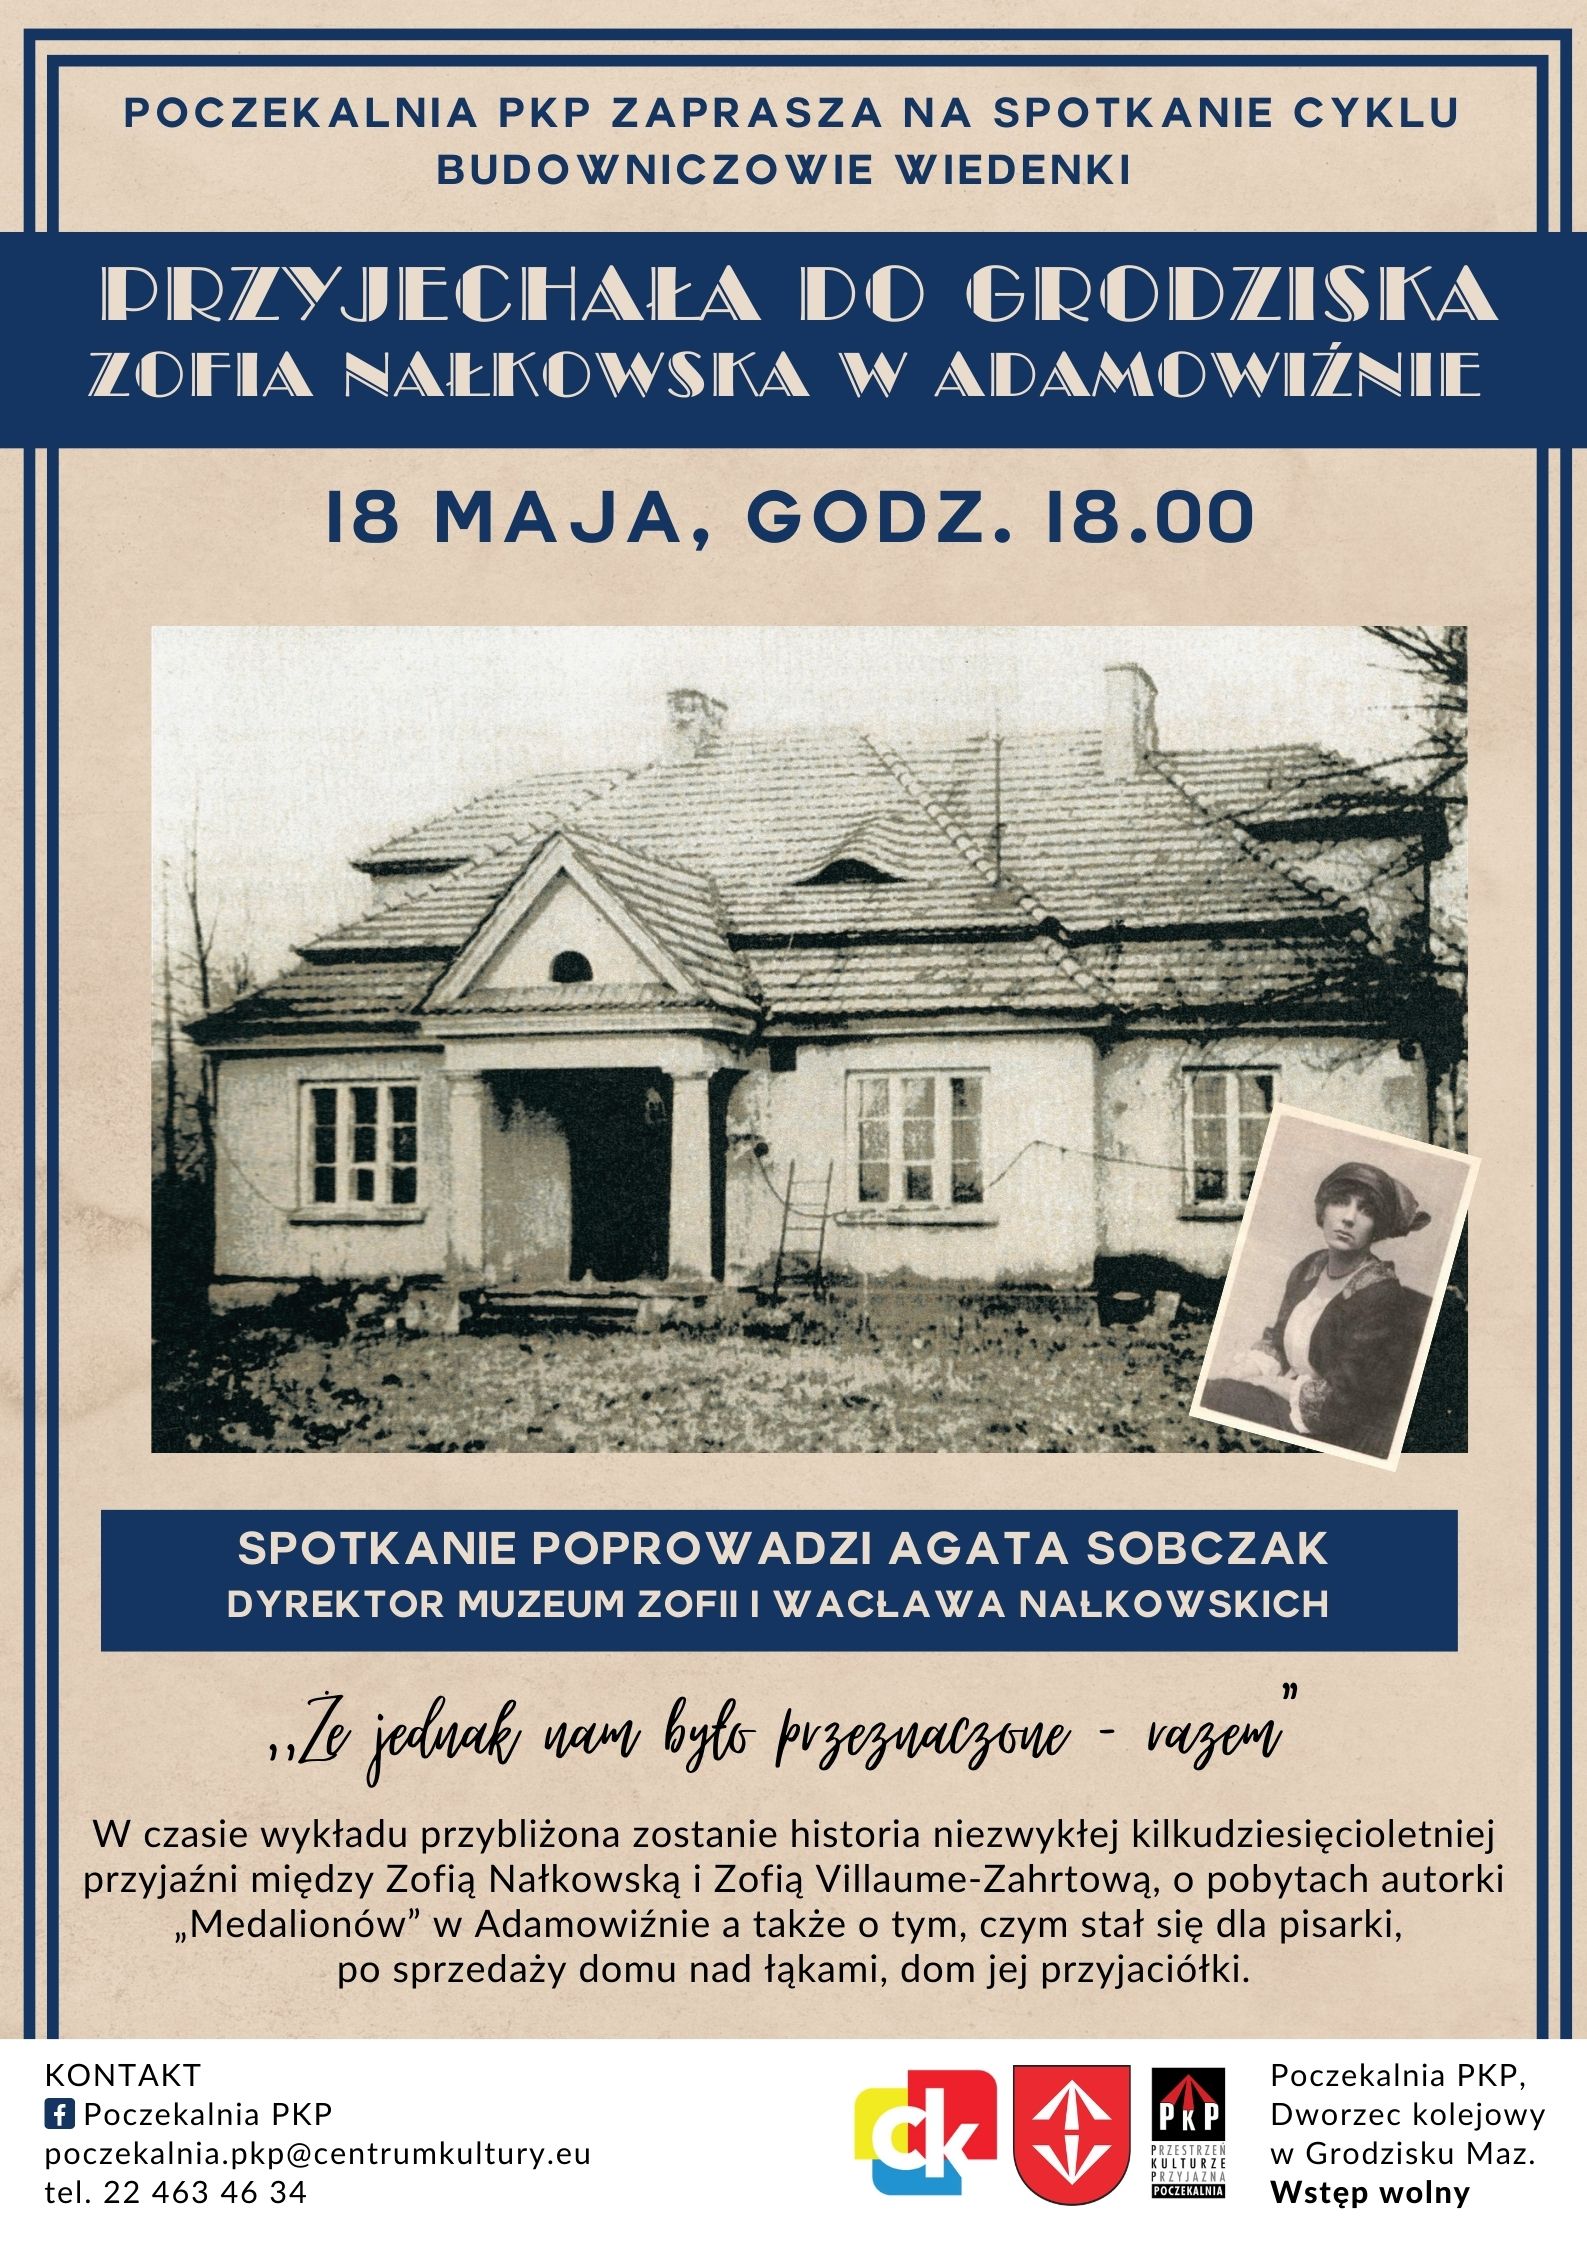 Podczas spotkania opowiemy o Zofii Nałkowskiej w kontekście jej pobytu w Adamowiźnie.